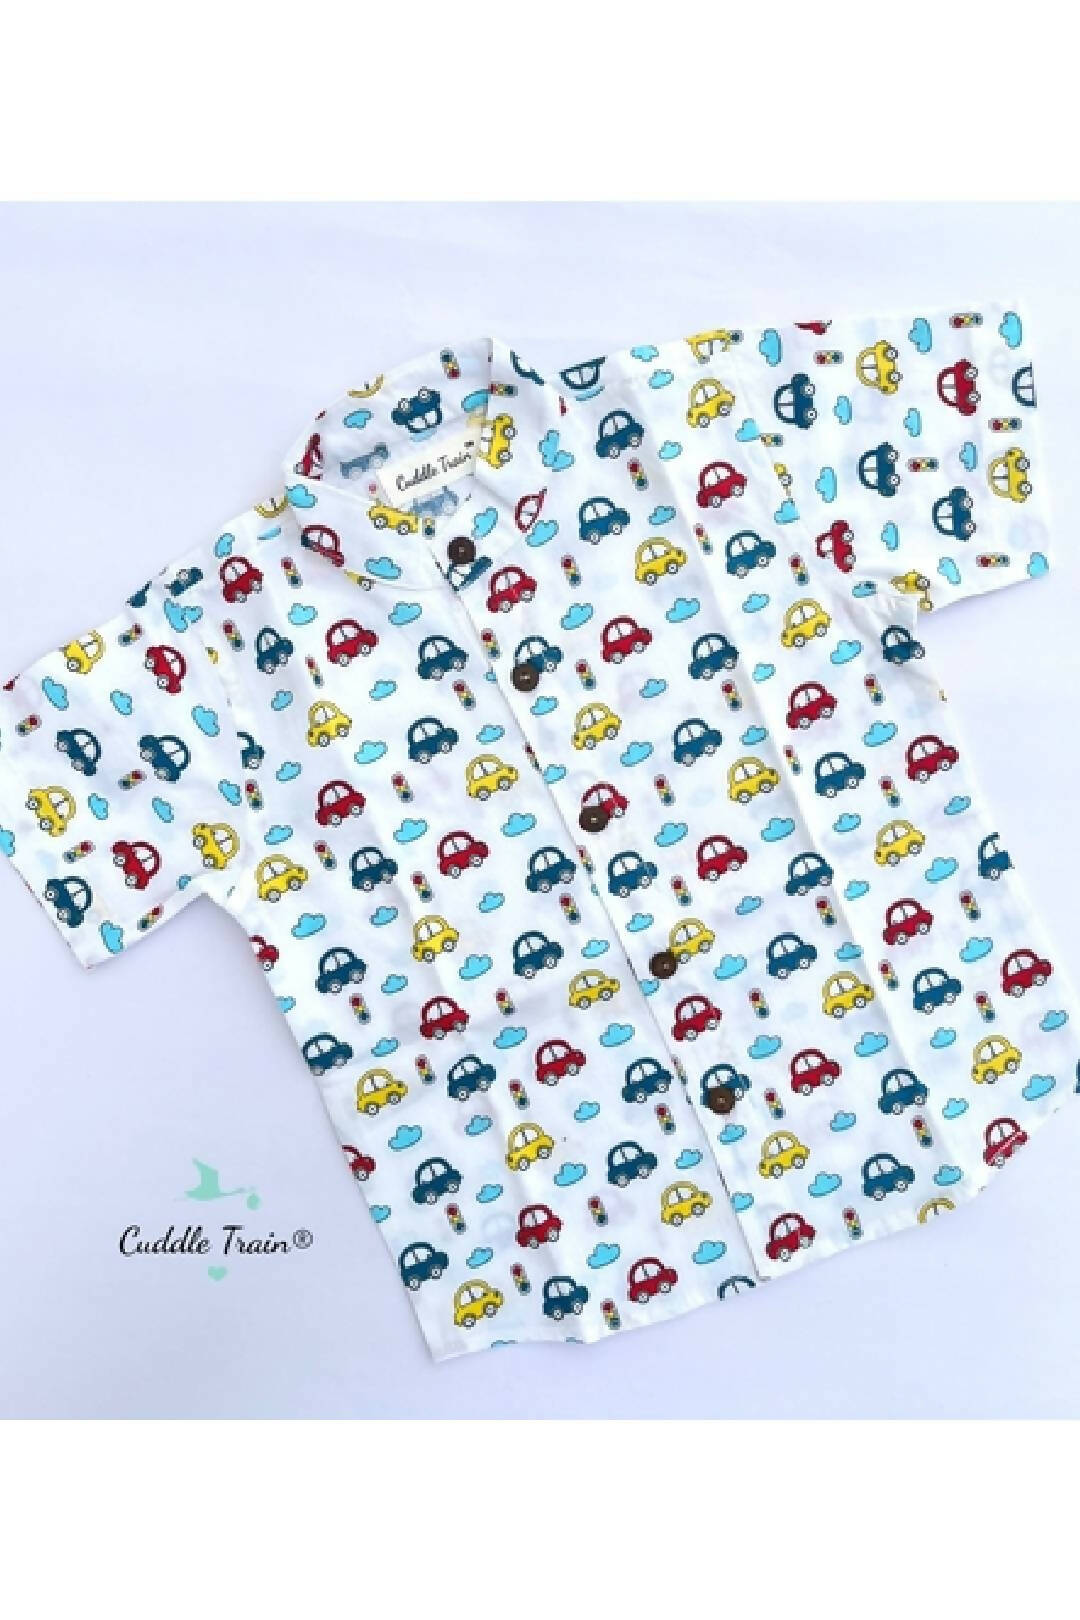 Color Cars - Premium Soft Cotton Boys Shirt